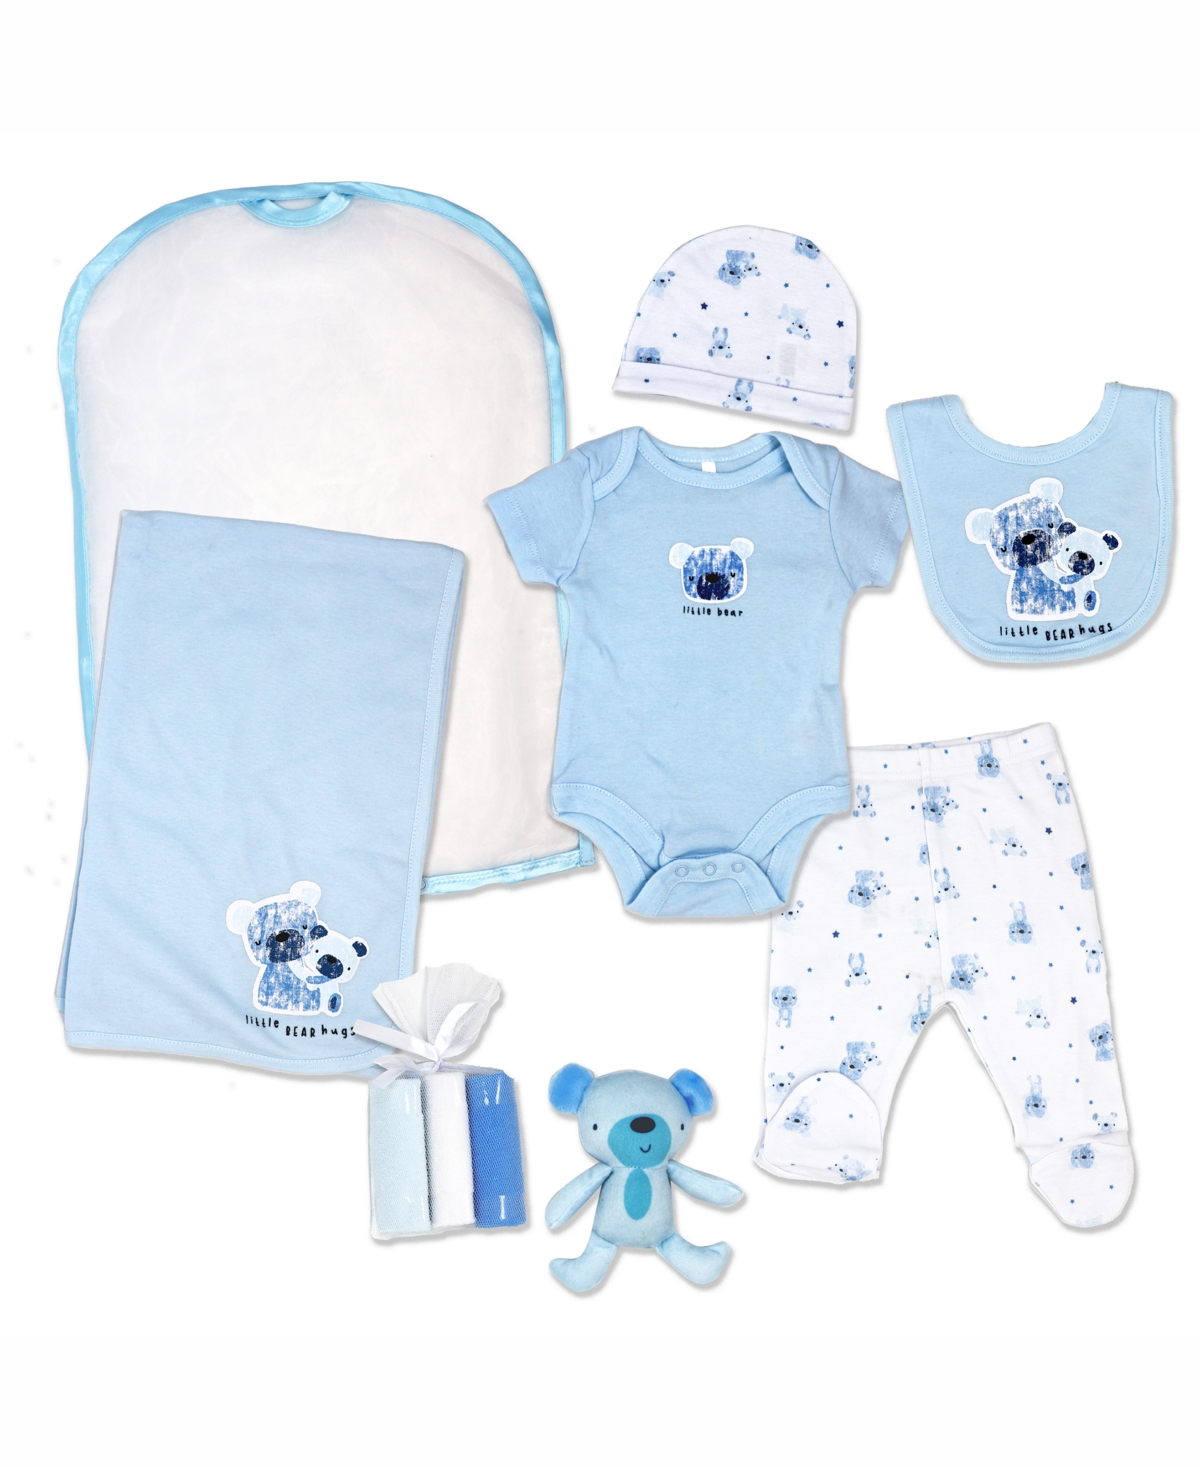 Rock-a-bye Baby Boutique Baby Boys Little Bear Hugs Layette Gift, 10 Piece Set In Blue